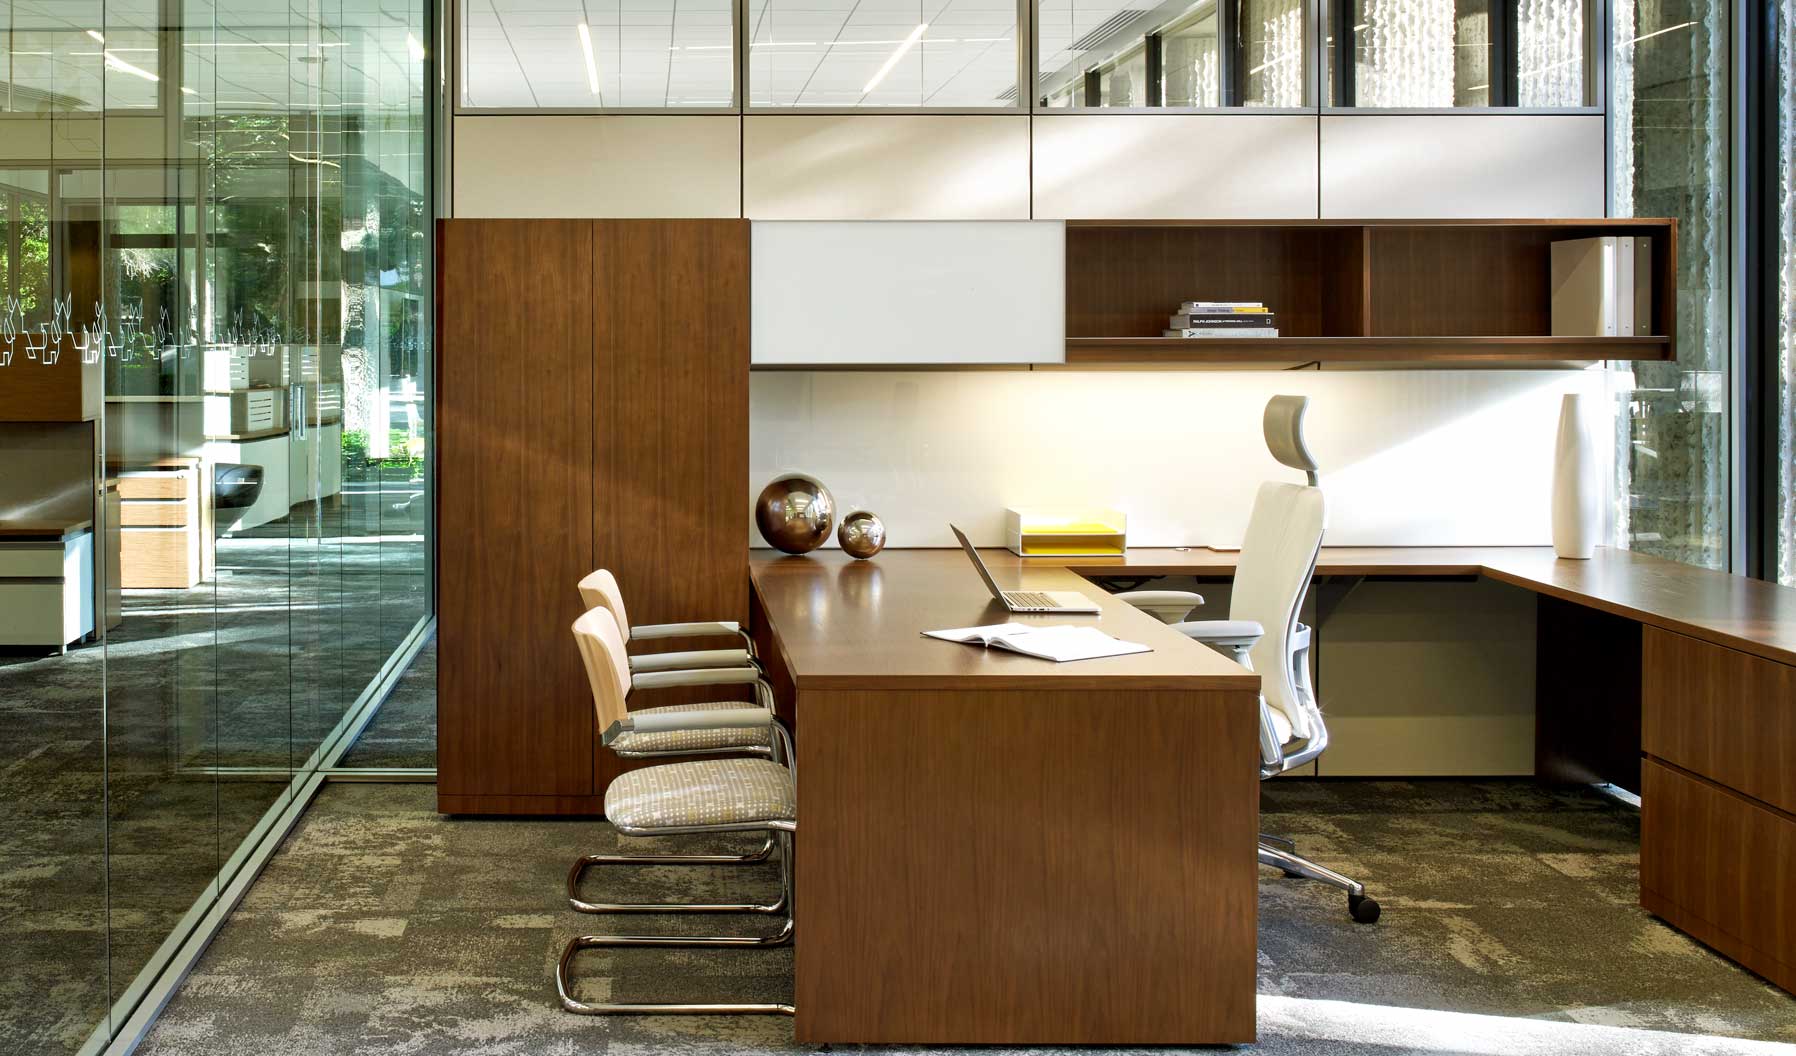 这个传统风格的独立办公室既支持专注的伏案工作，也支持与客人的交际互动。而且，它还提供了开放和封闭的储物空间，以及可钉表面。玻璃的使用将这个高管独立办公室与整体办公环境连接起来。